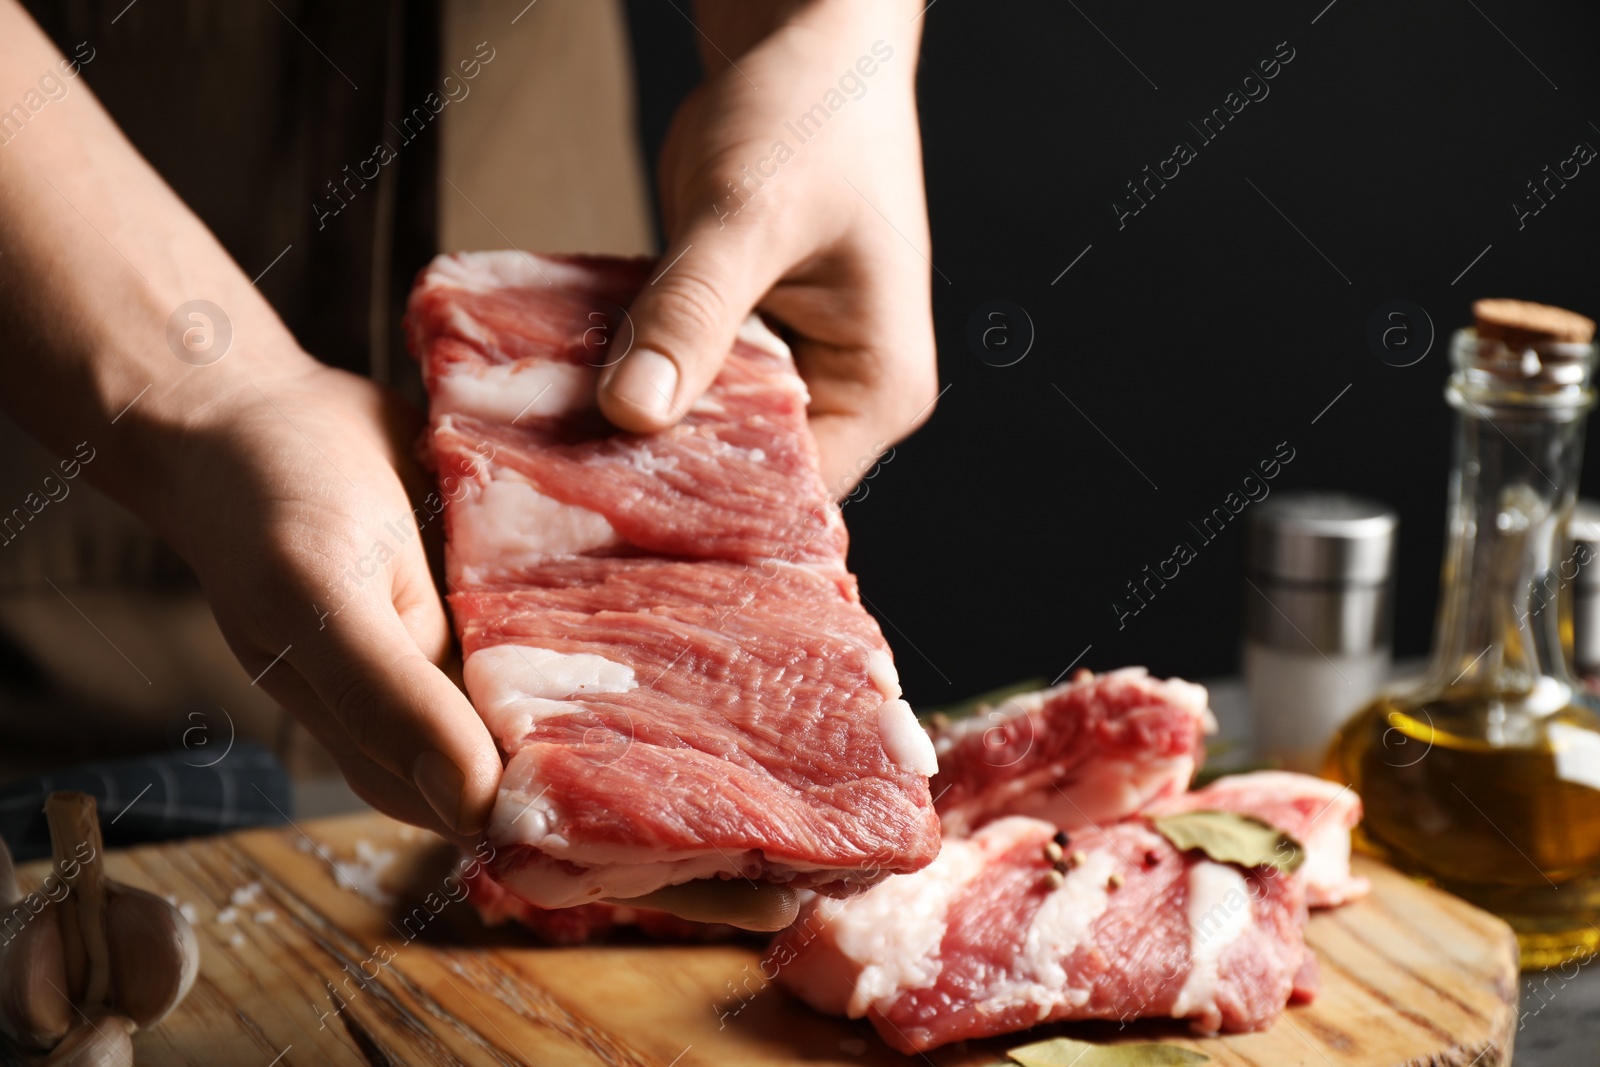 Photo of Man holding raw ribs at table, closeup